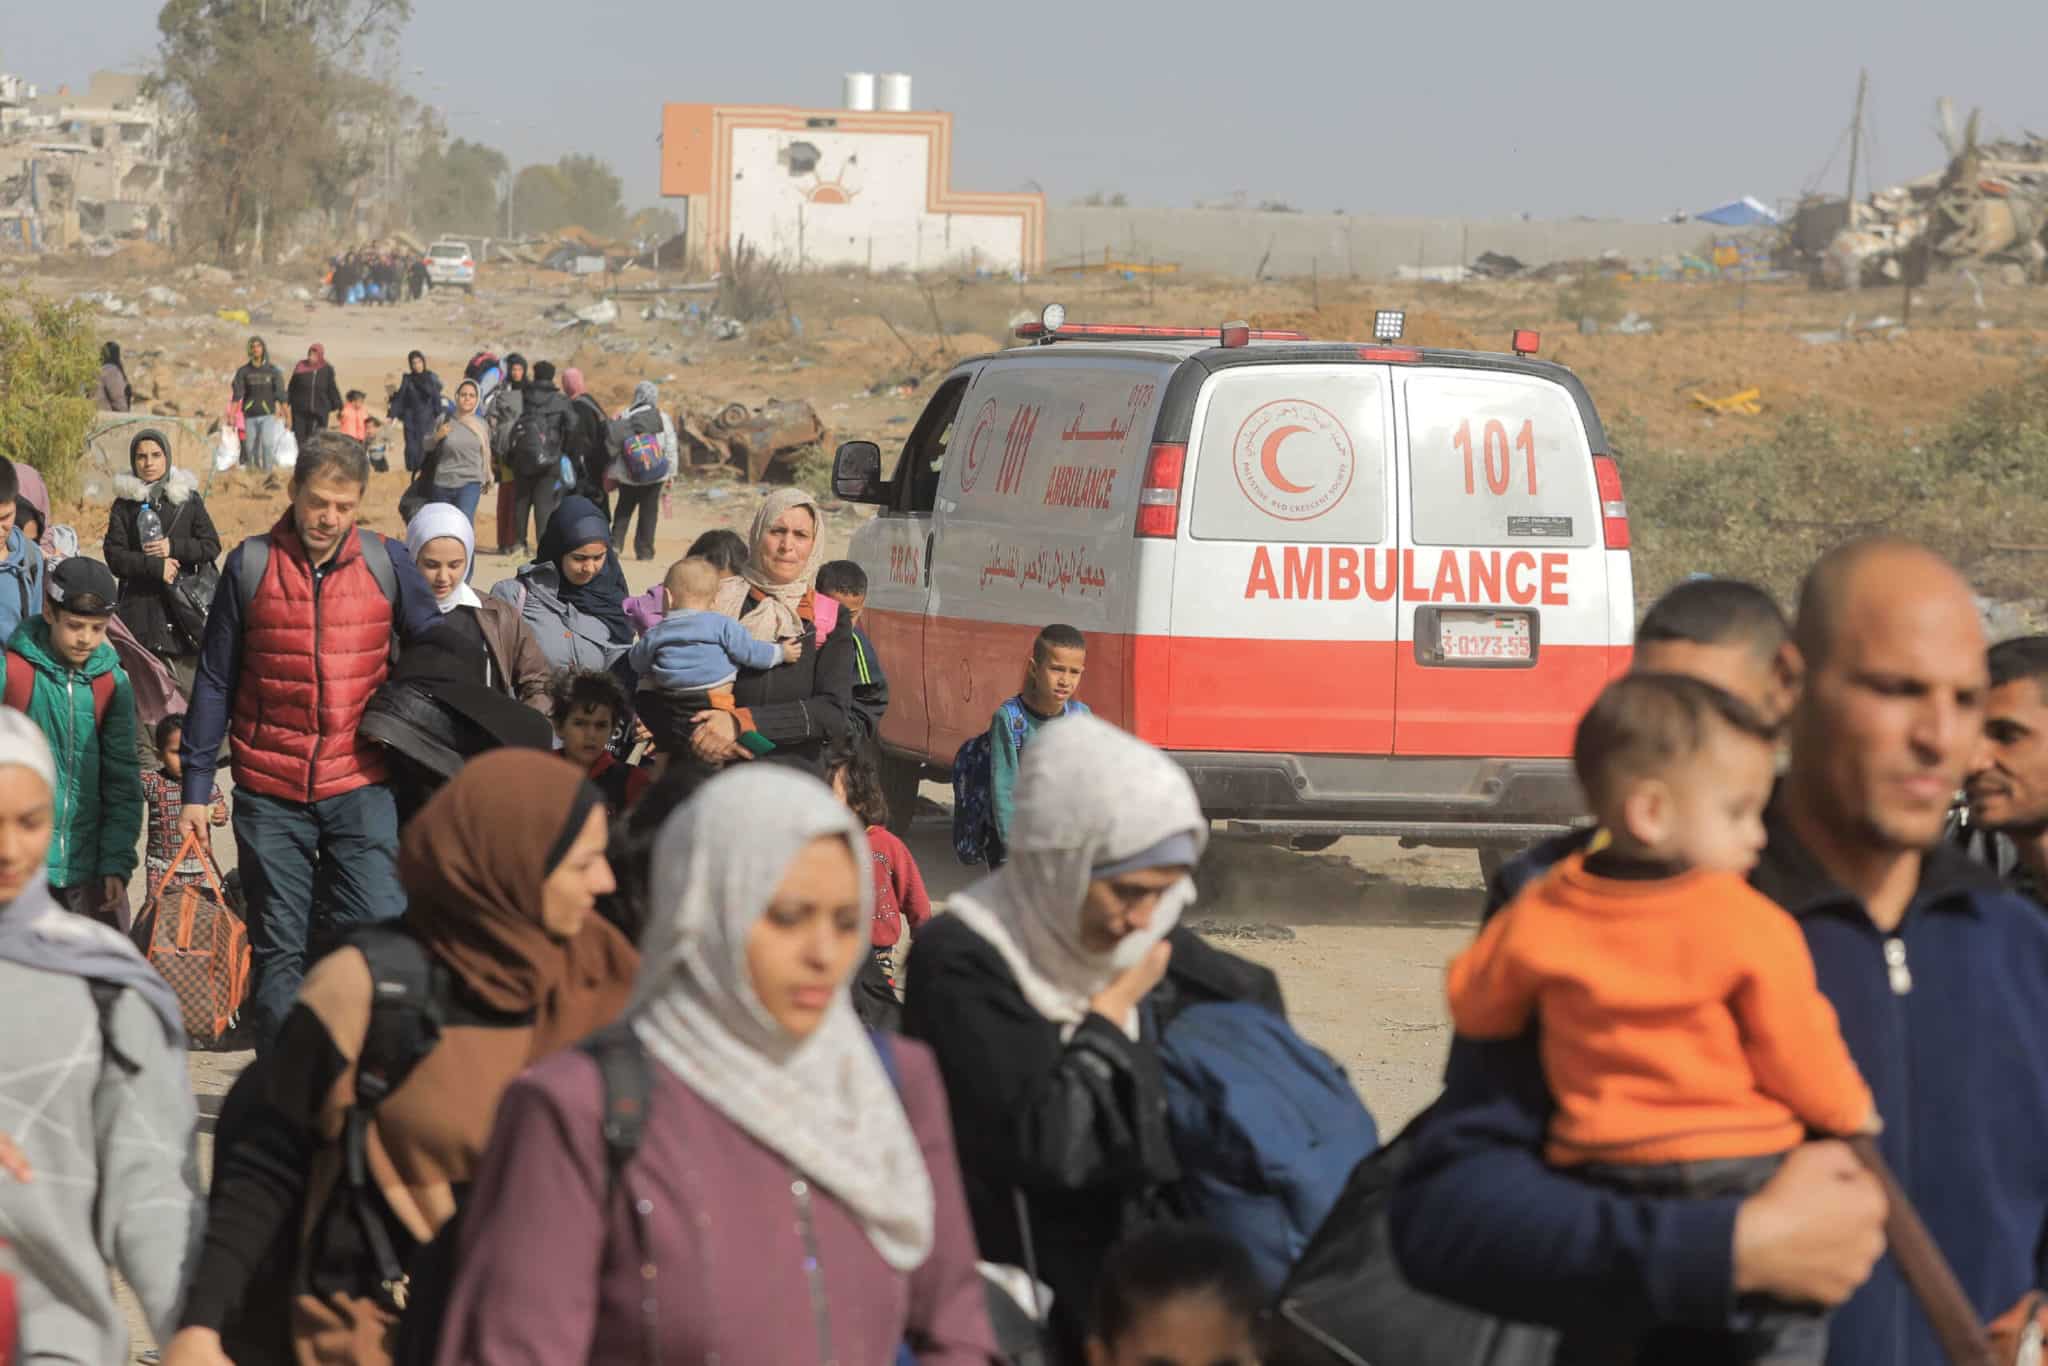 L'Organisation mondiale de la santé accuse Israël d'avoir bloqué les ambulances